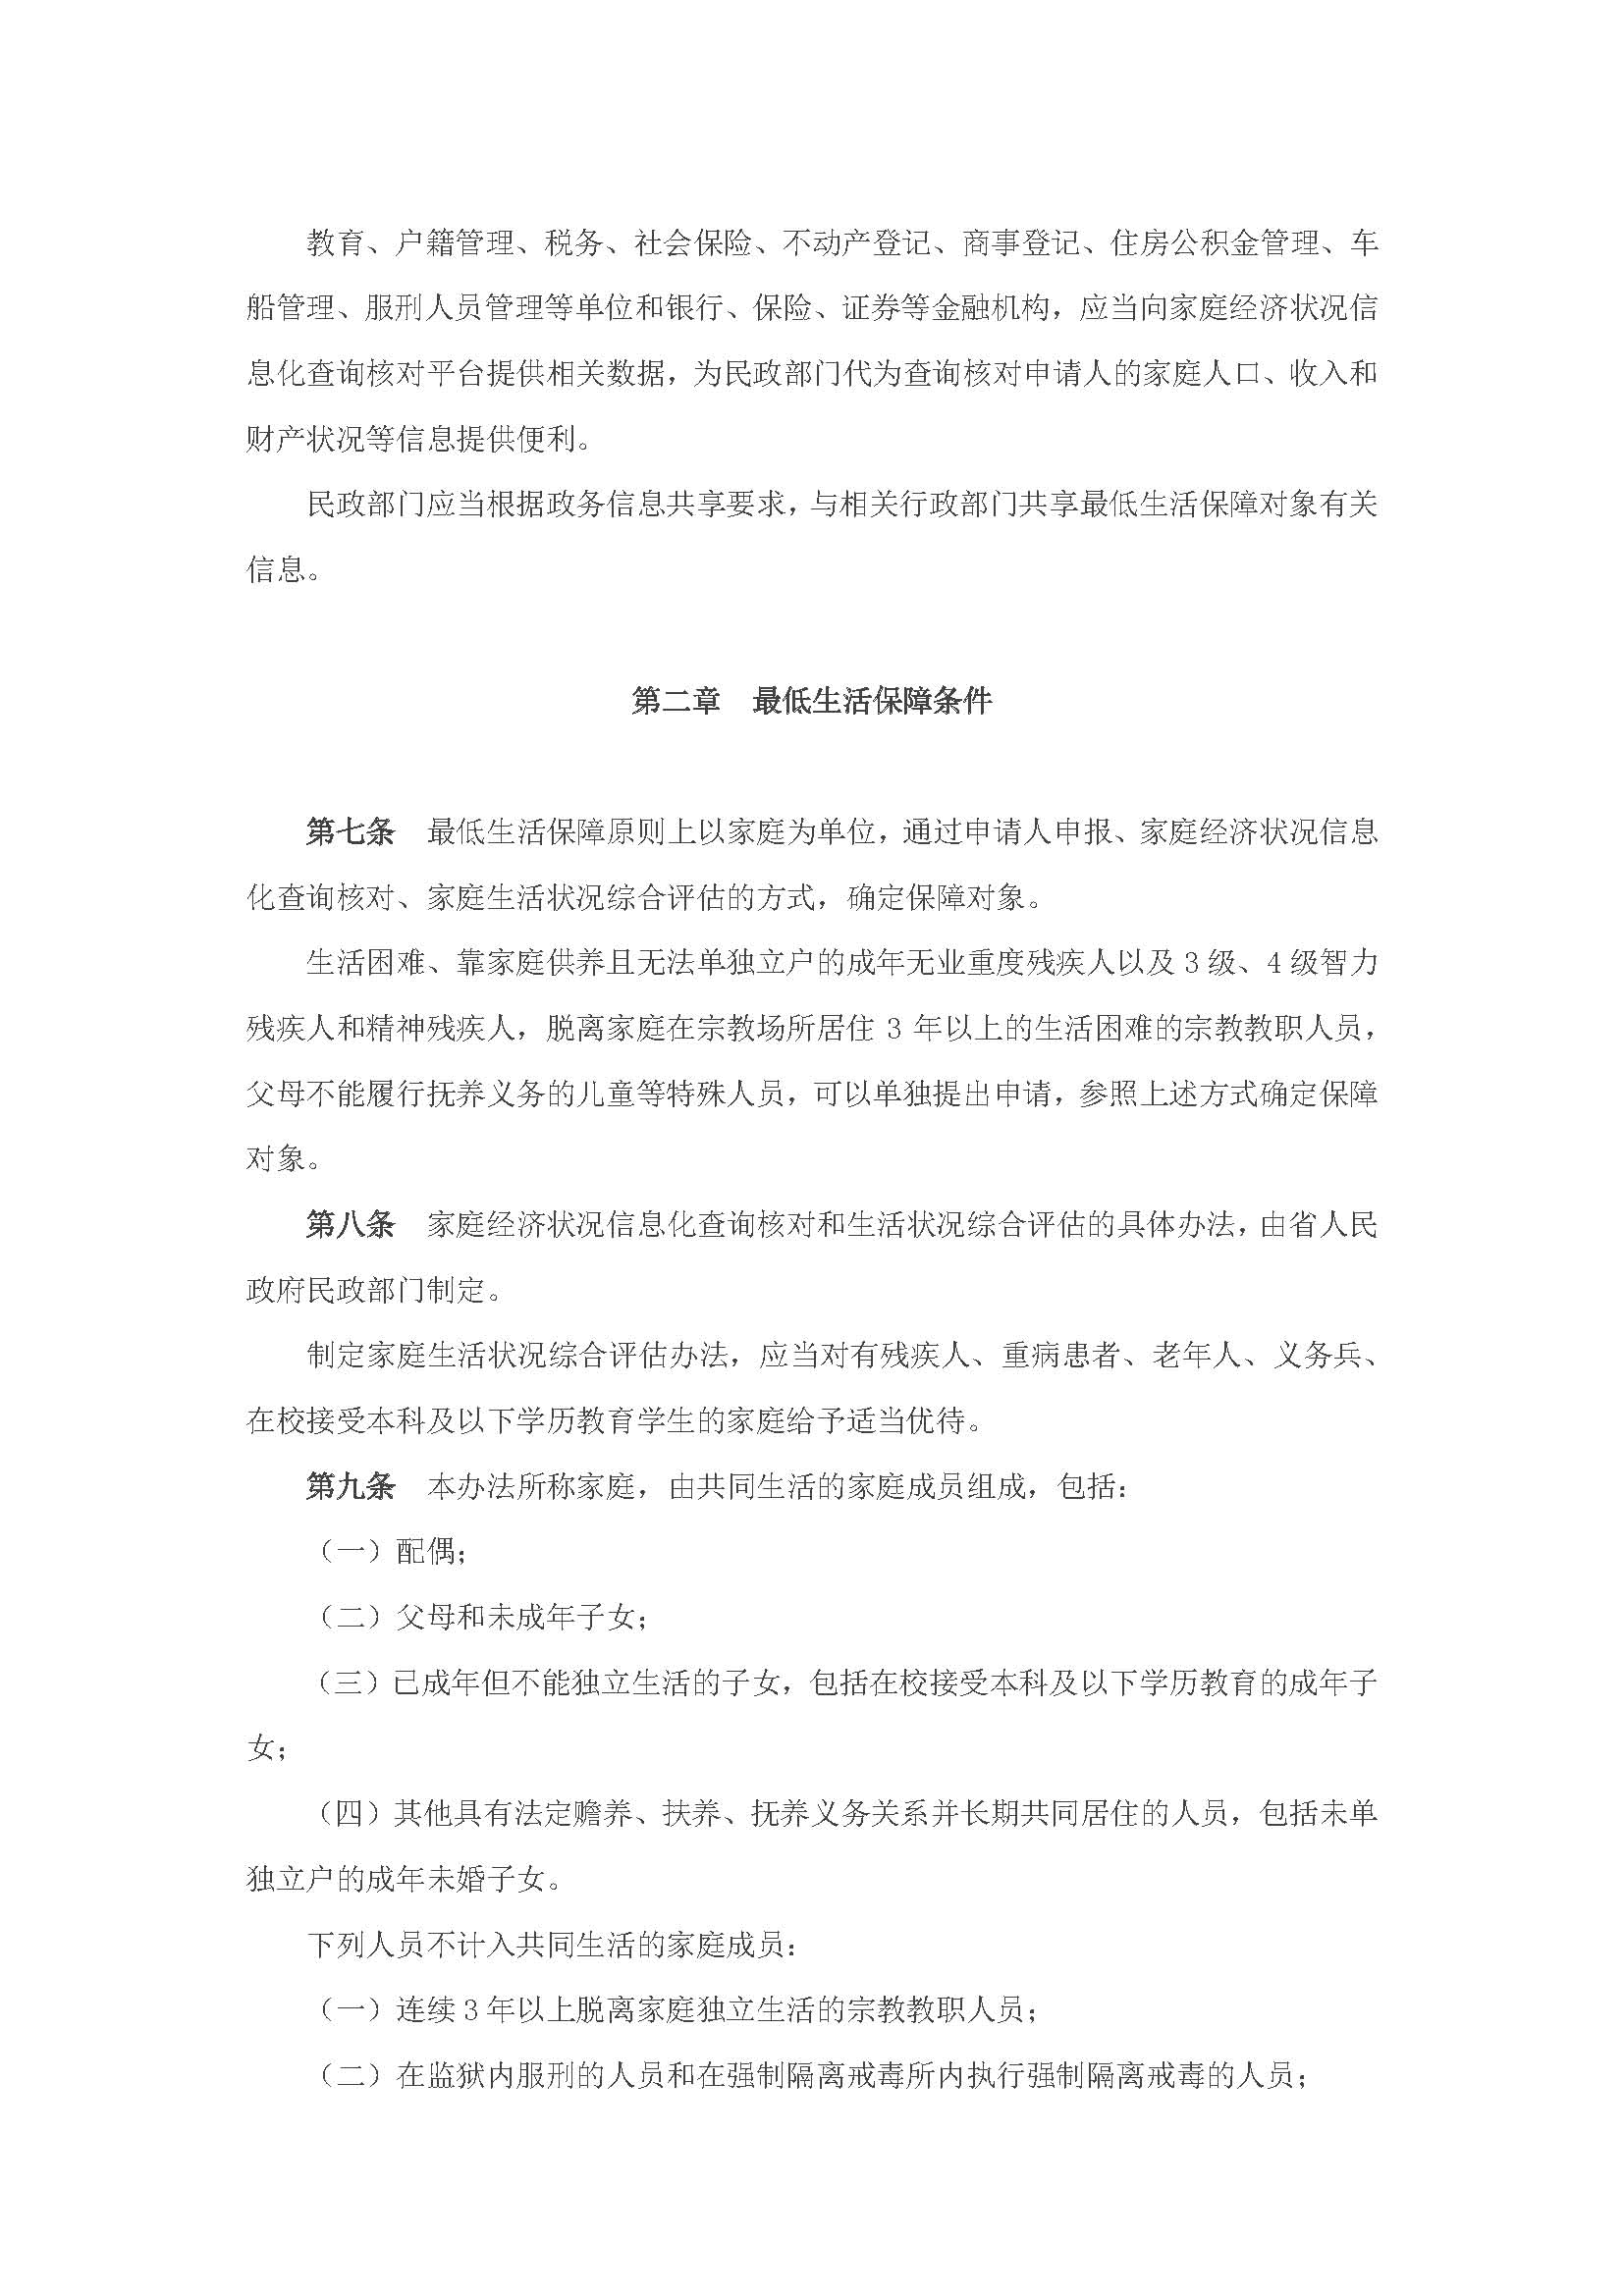 广东省最低生活保障制度实施办法_页面_3.jpg